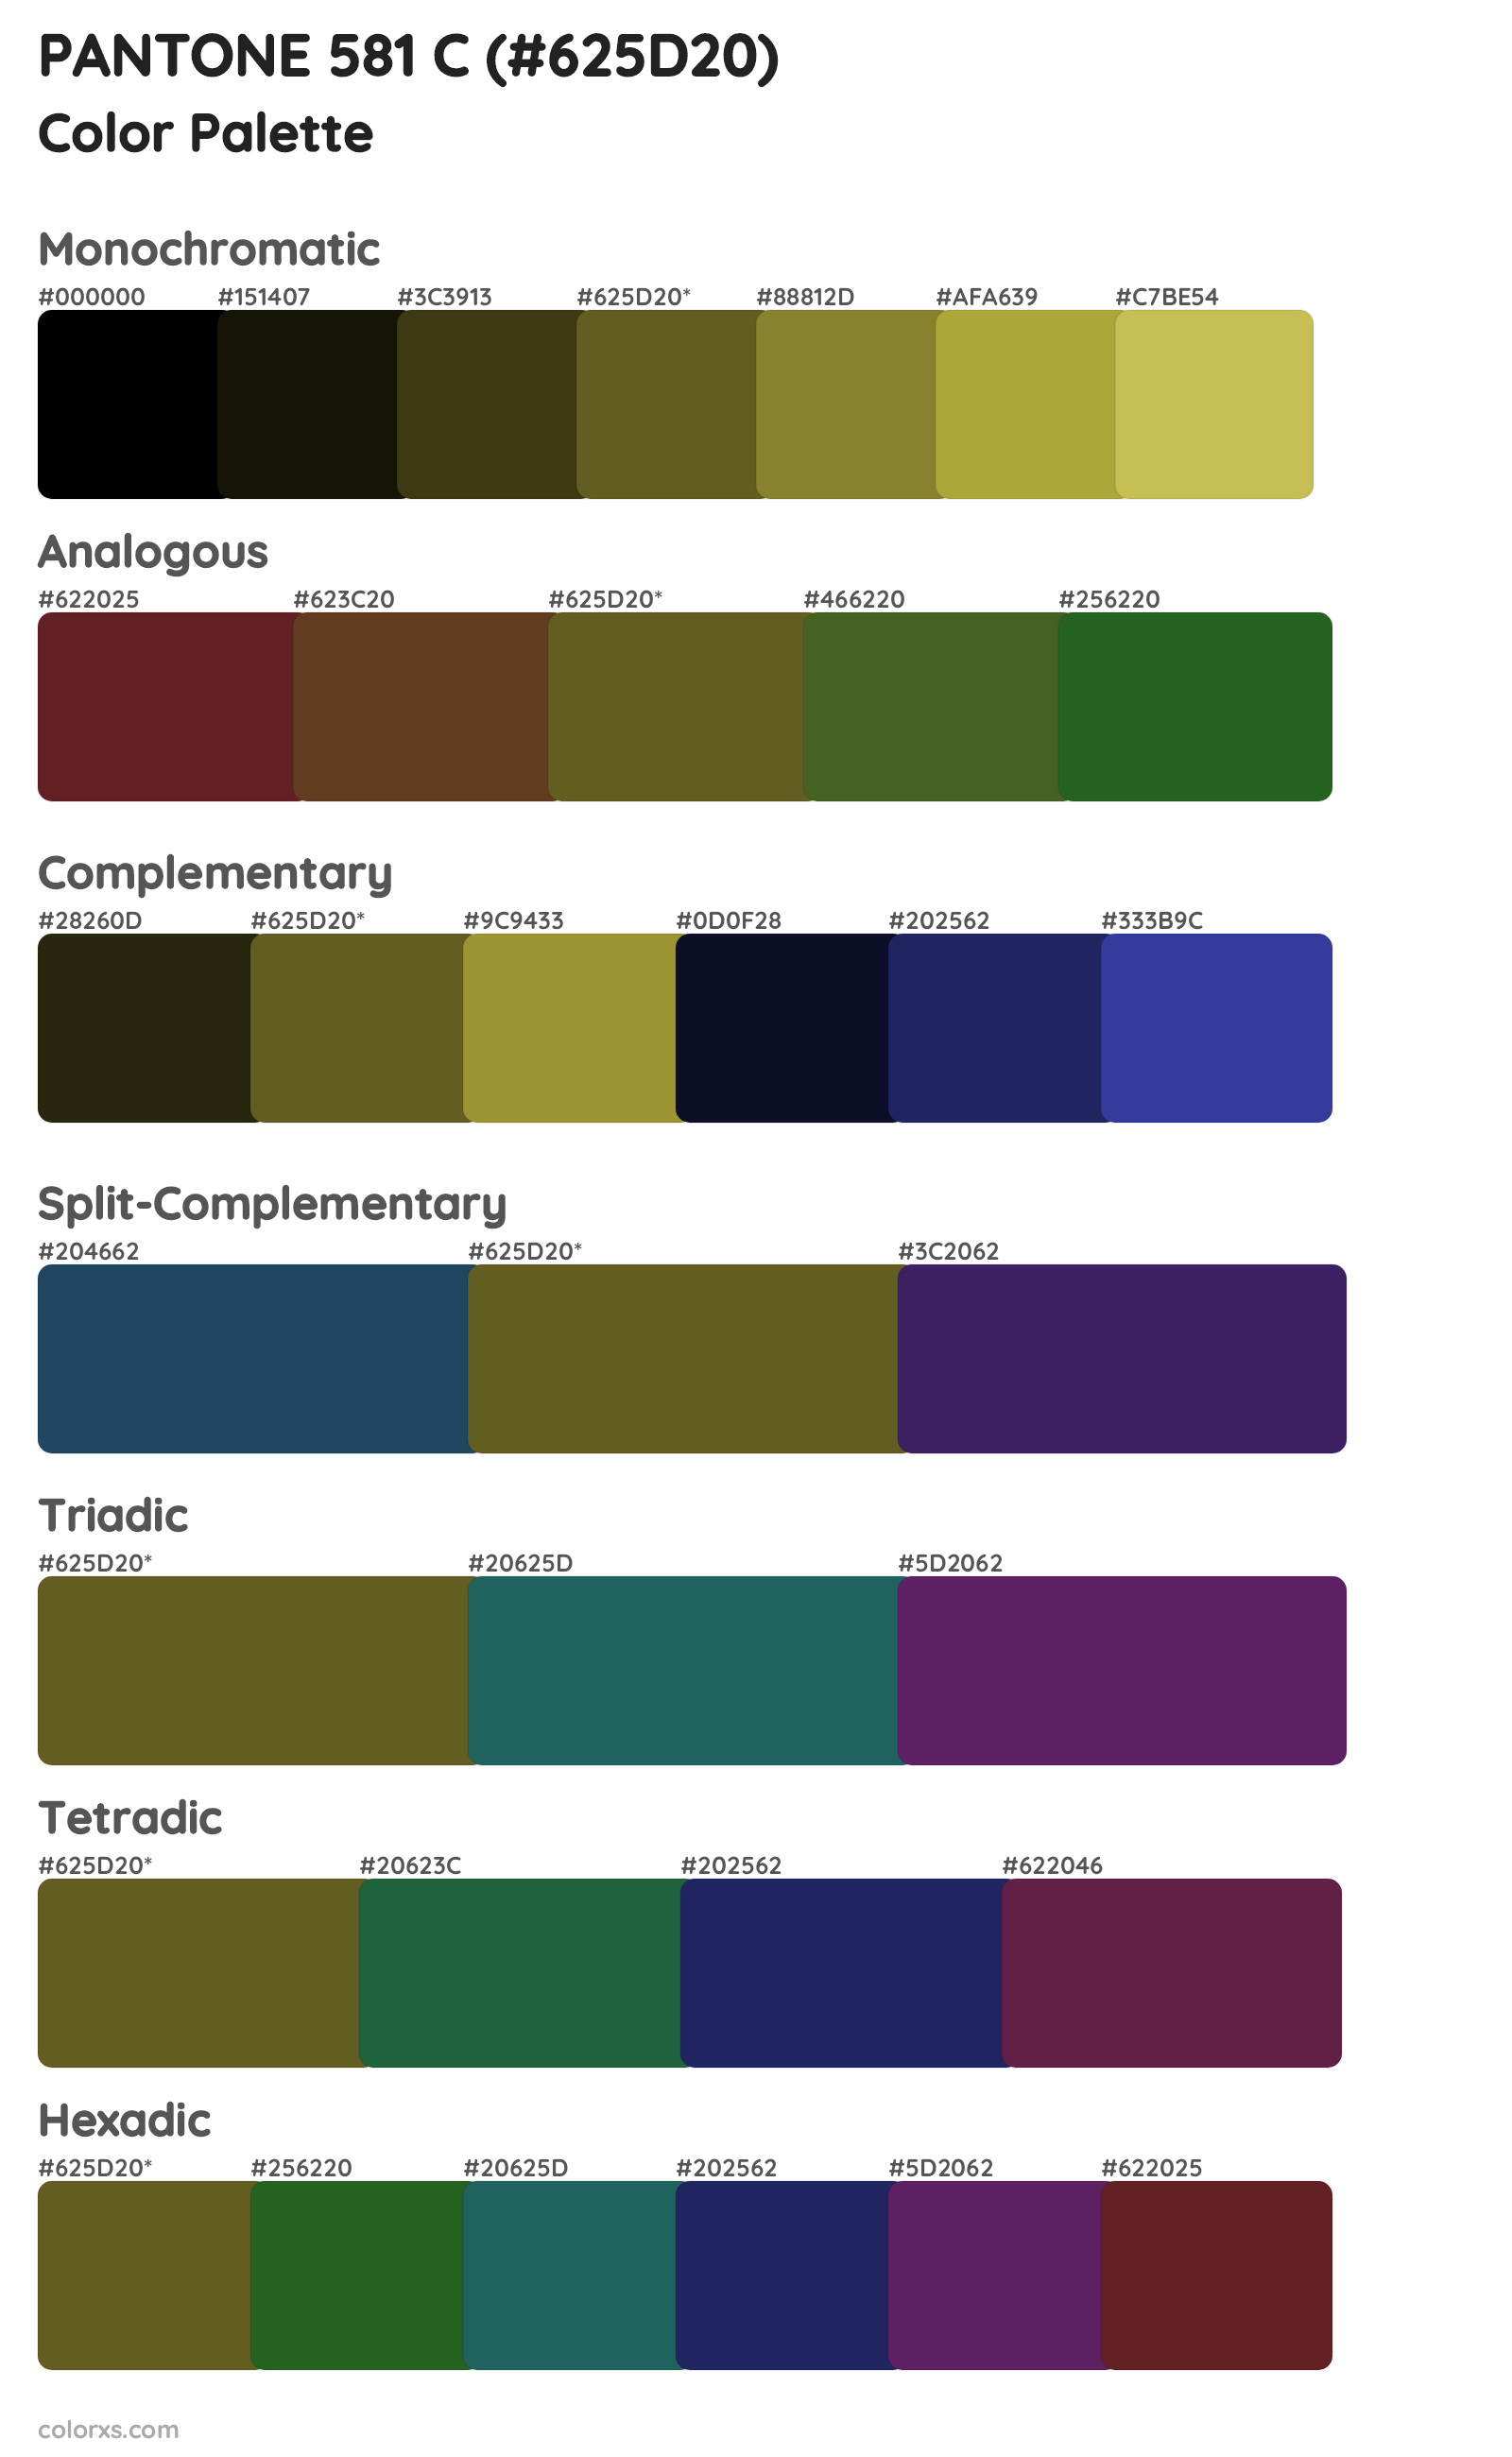 PANTONE 581 C Color Scheme Palettes